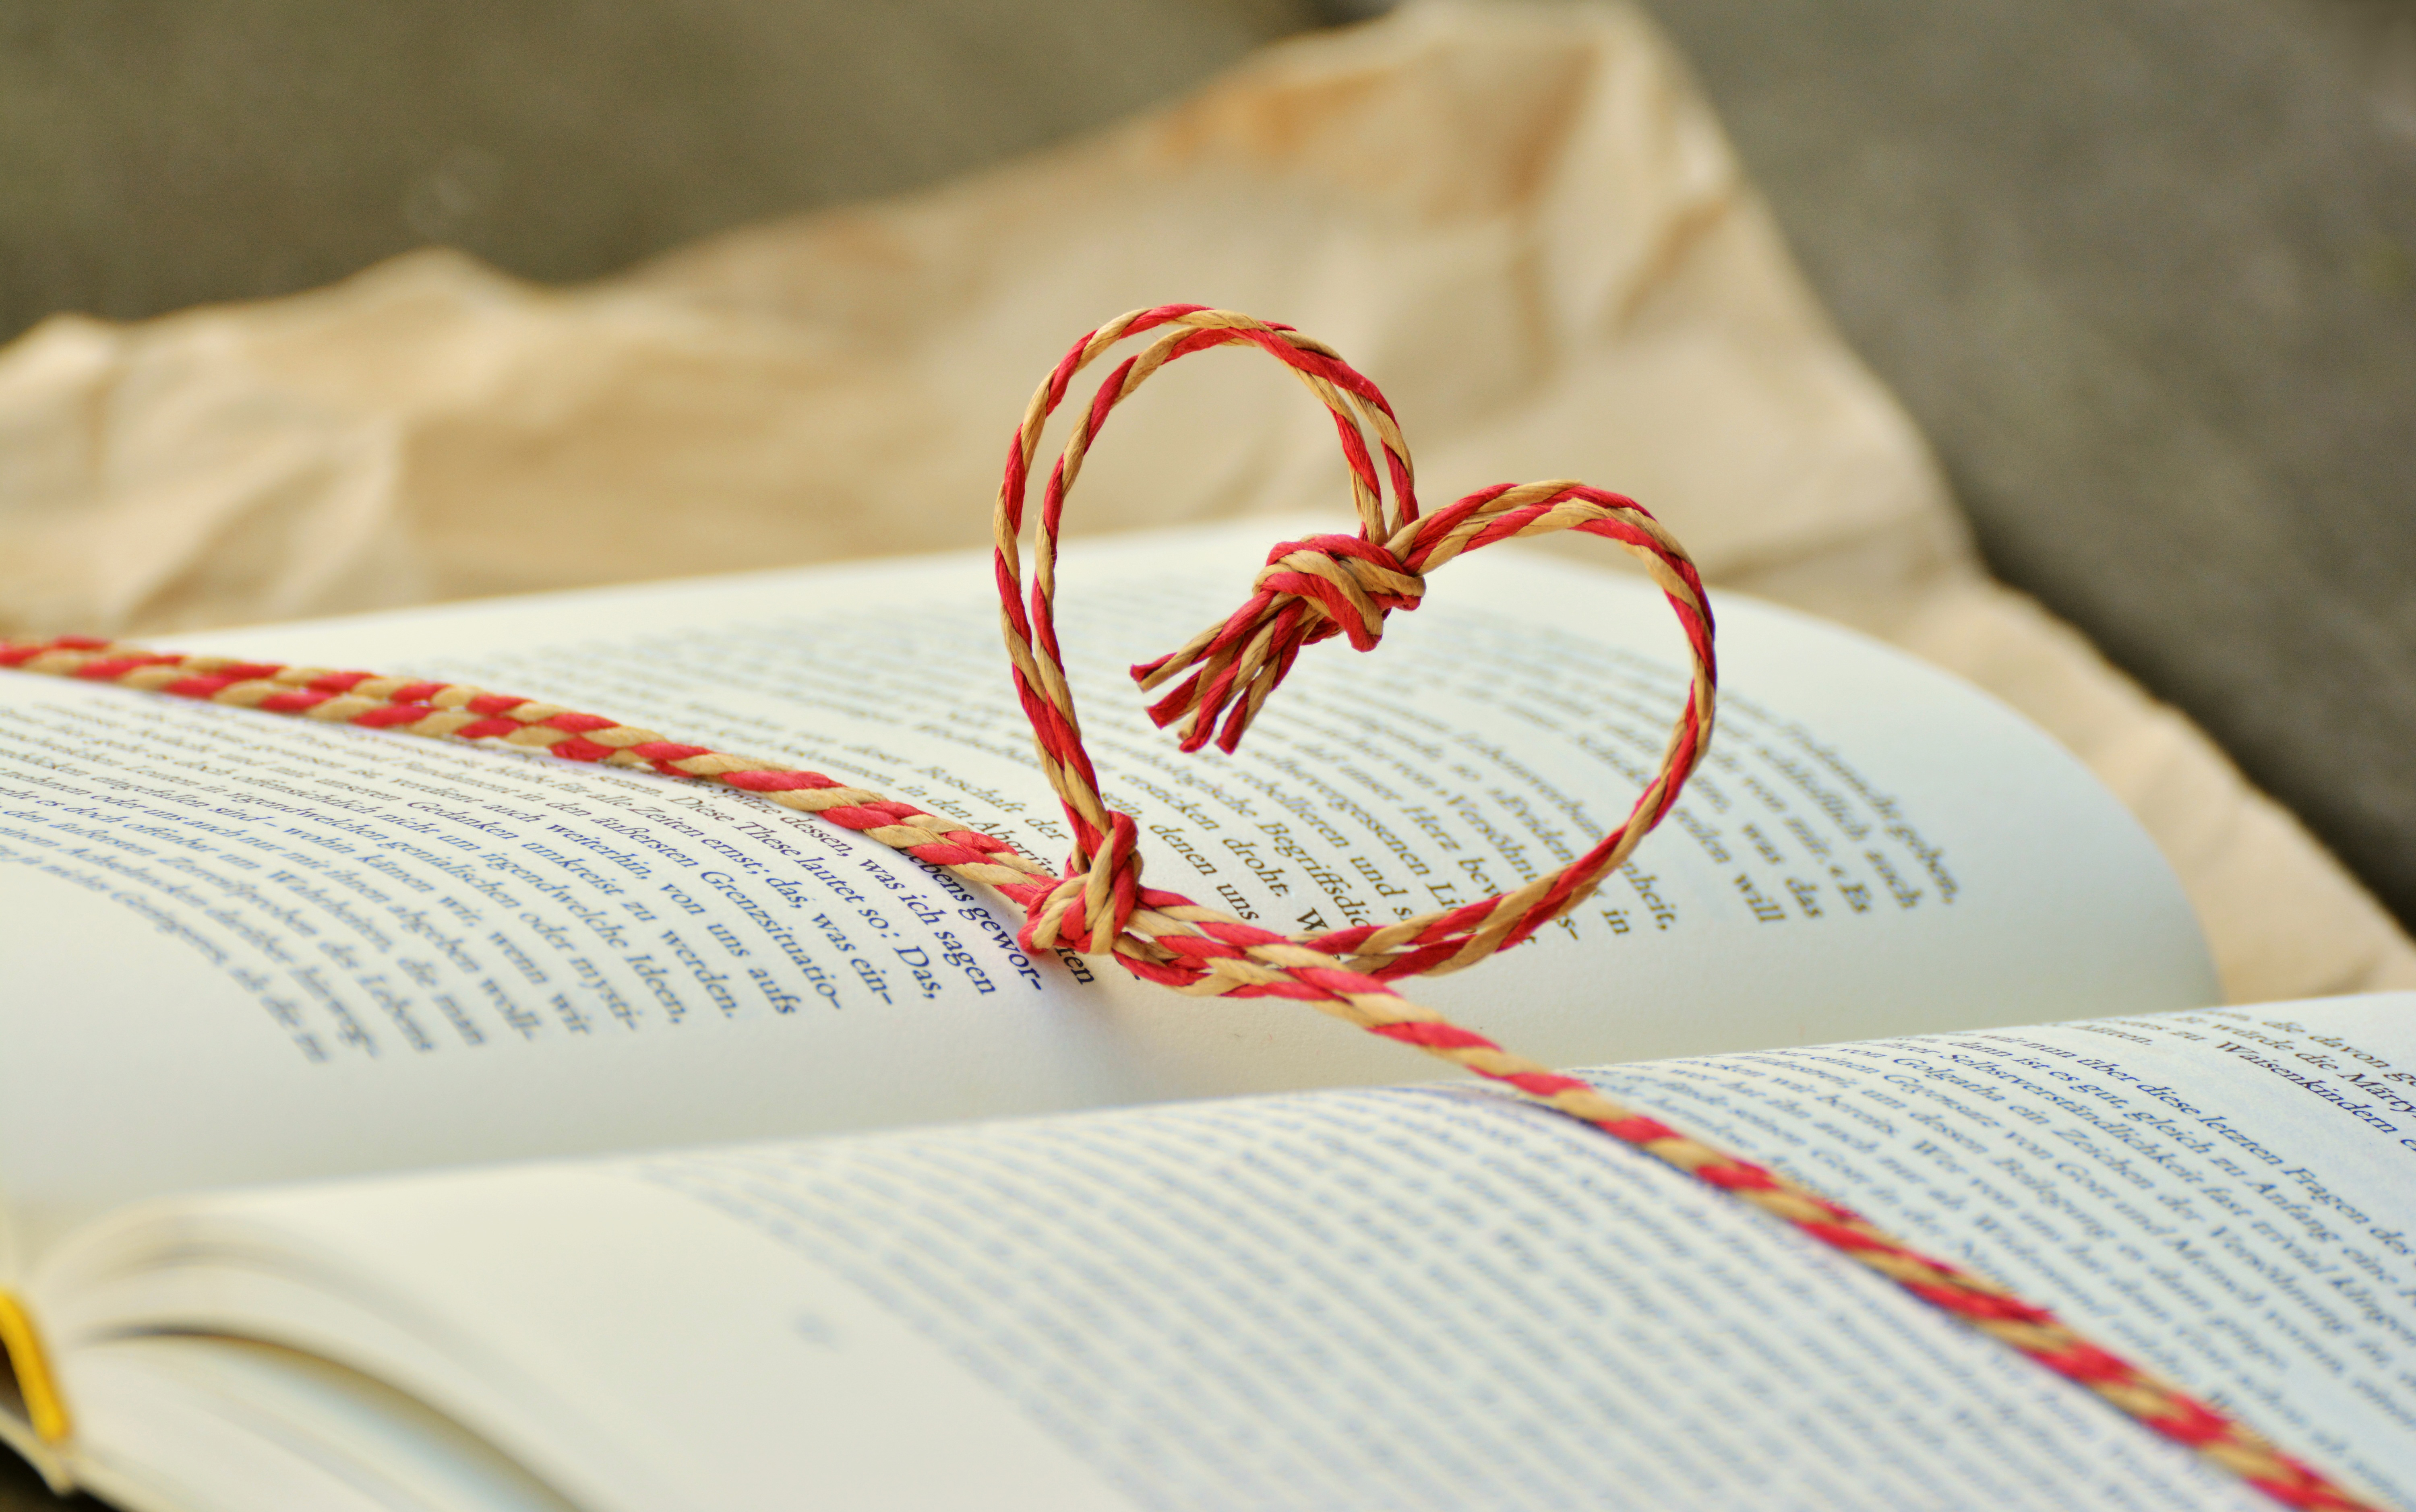 Testleser für Leserunde bei LovelyBooks gesucht